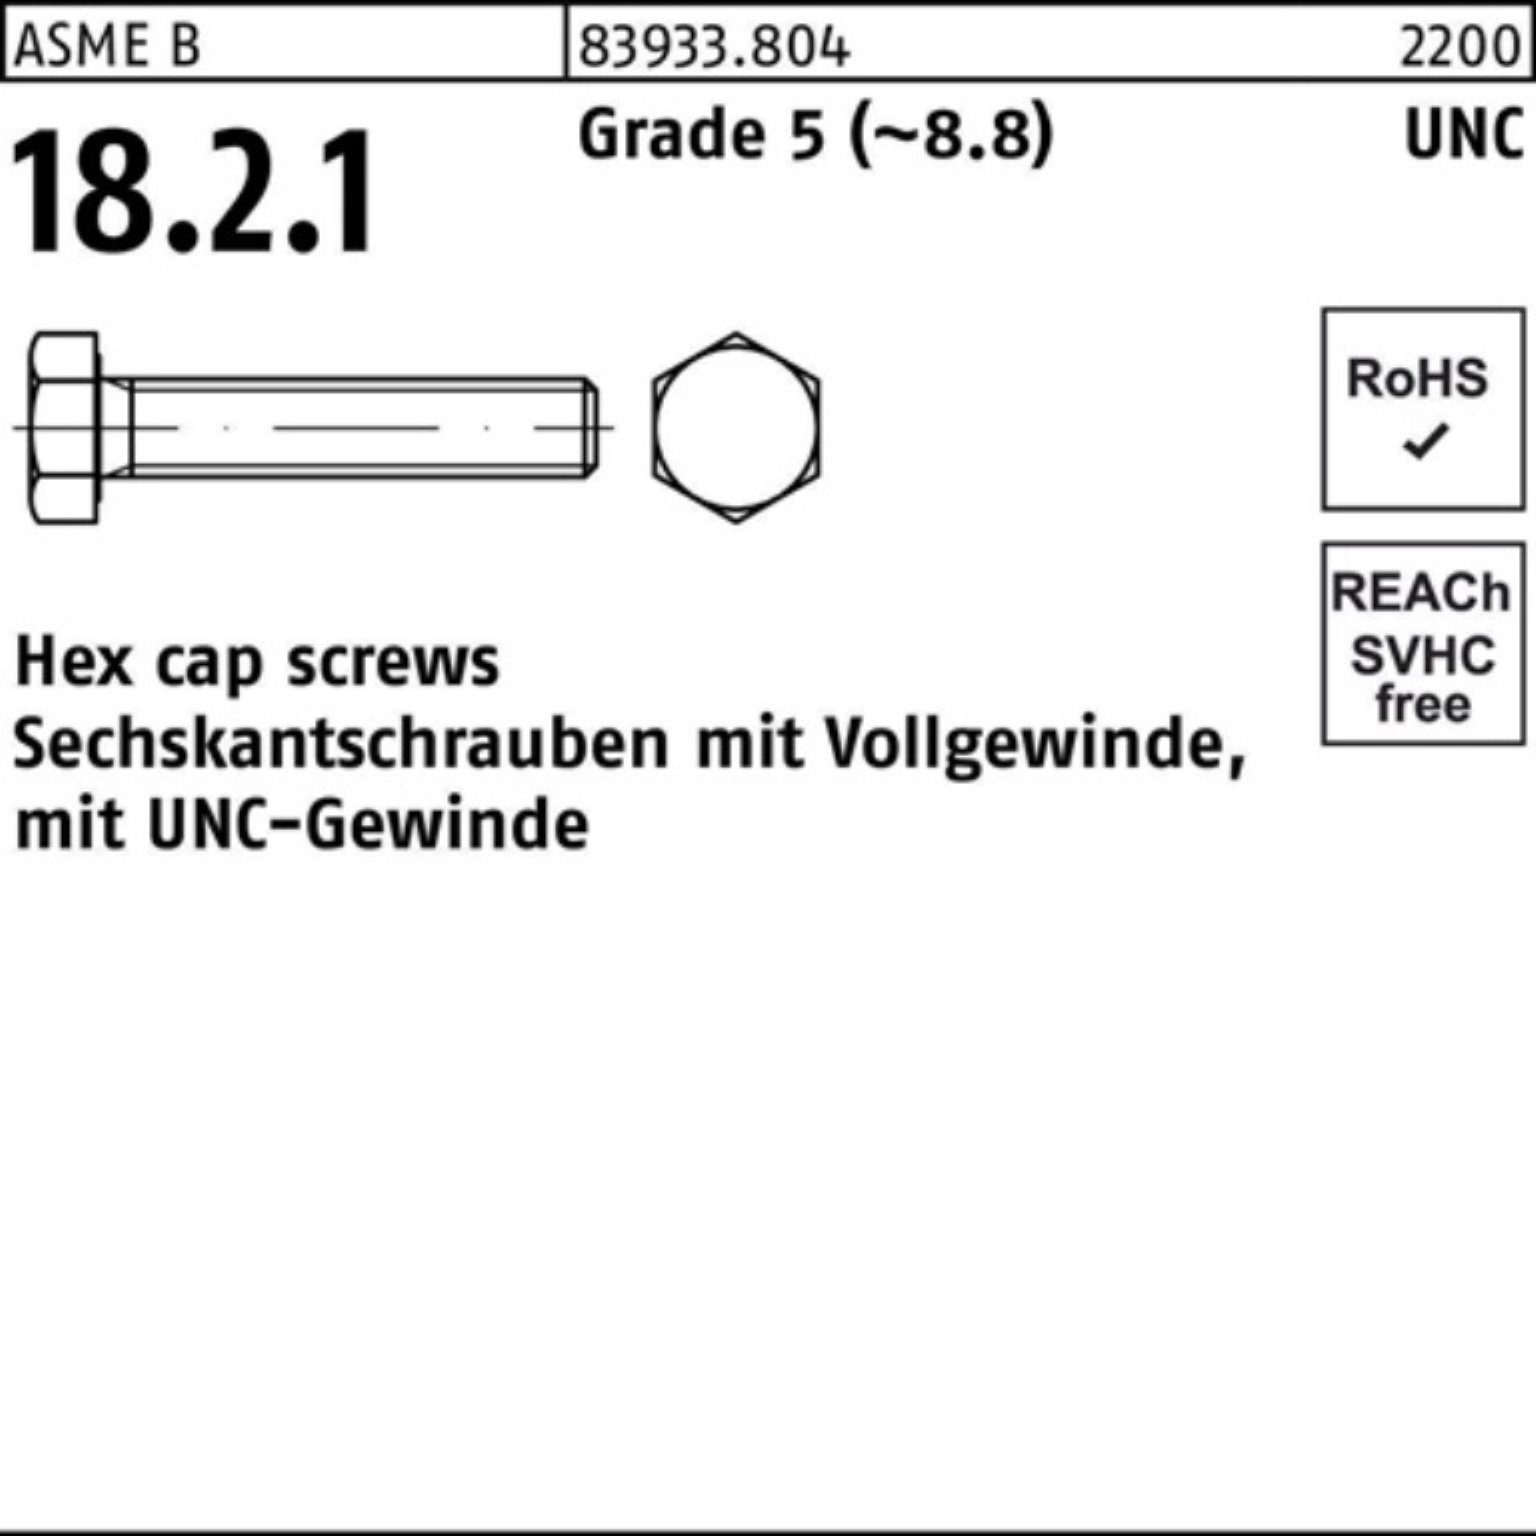 Reyher Sechskantschraube 100er Pack Sechskantschraube R 83933 UNC-Gewinde VG 1 1/2x 2 1/2 Grade